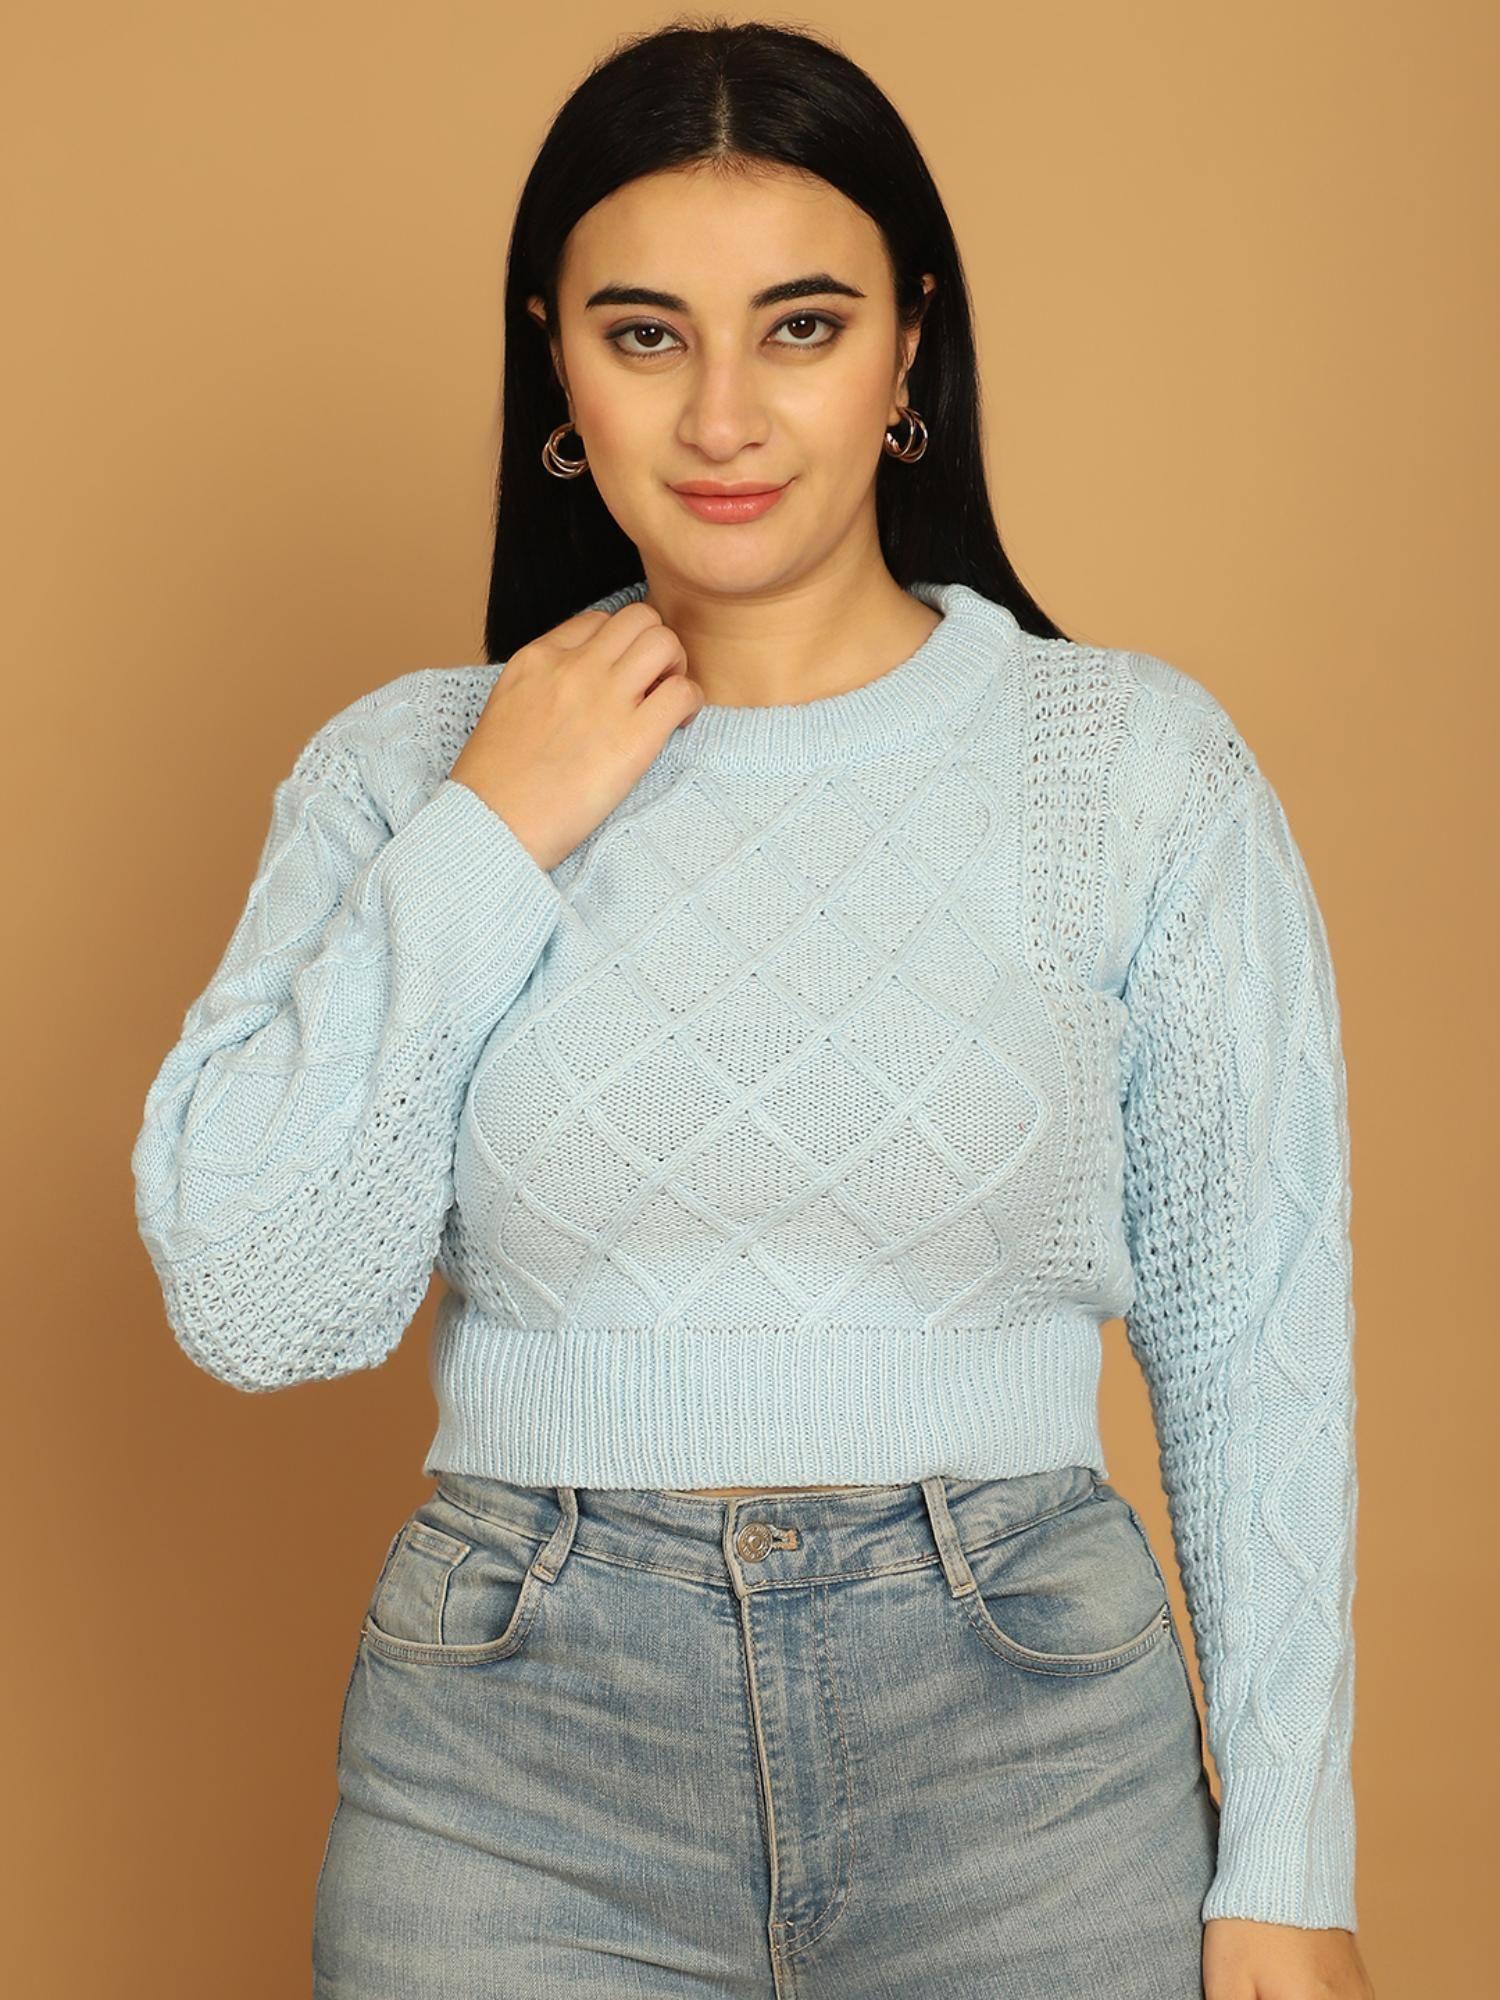 women's-acrylic-full-sky-blue-sleeve-crop-sweater